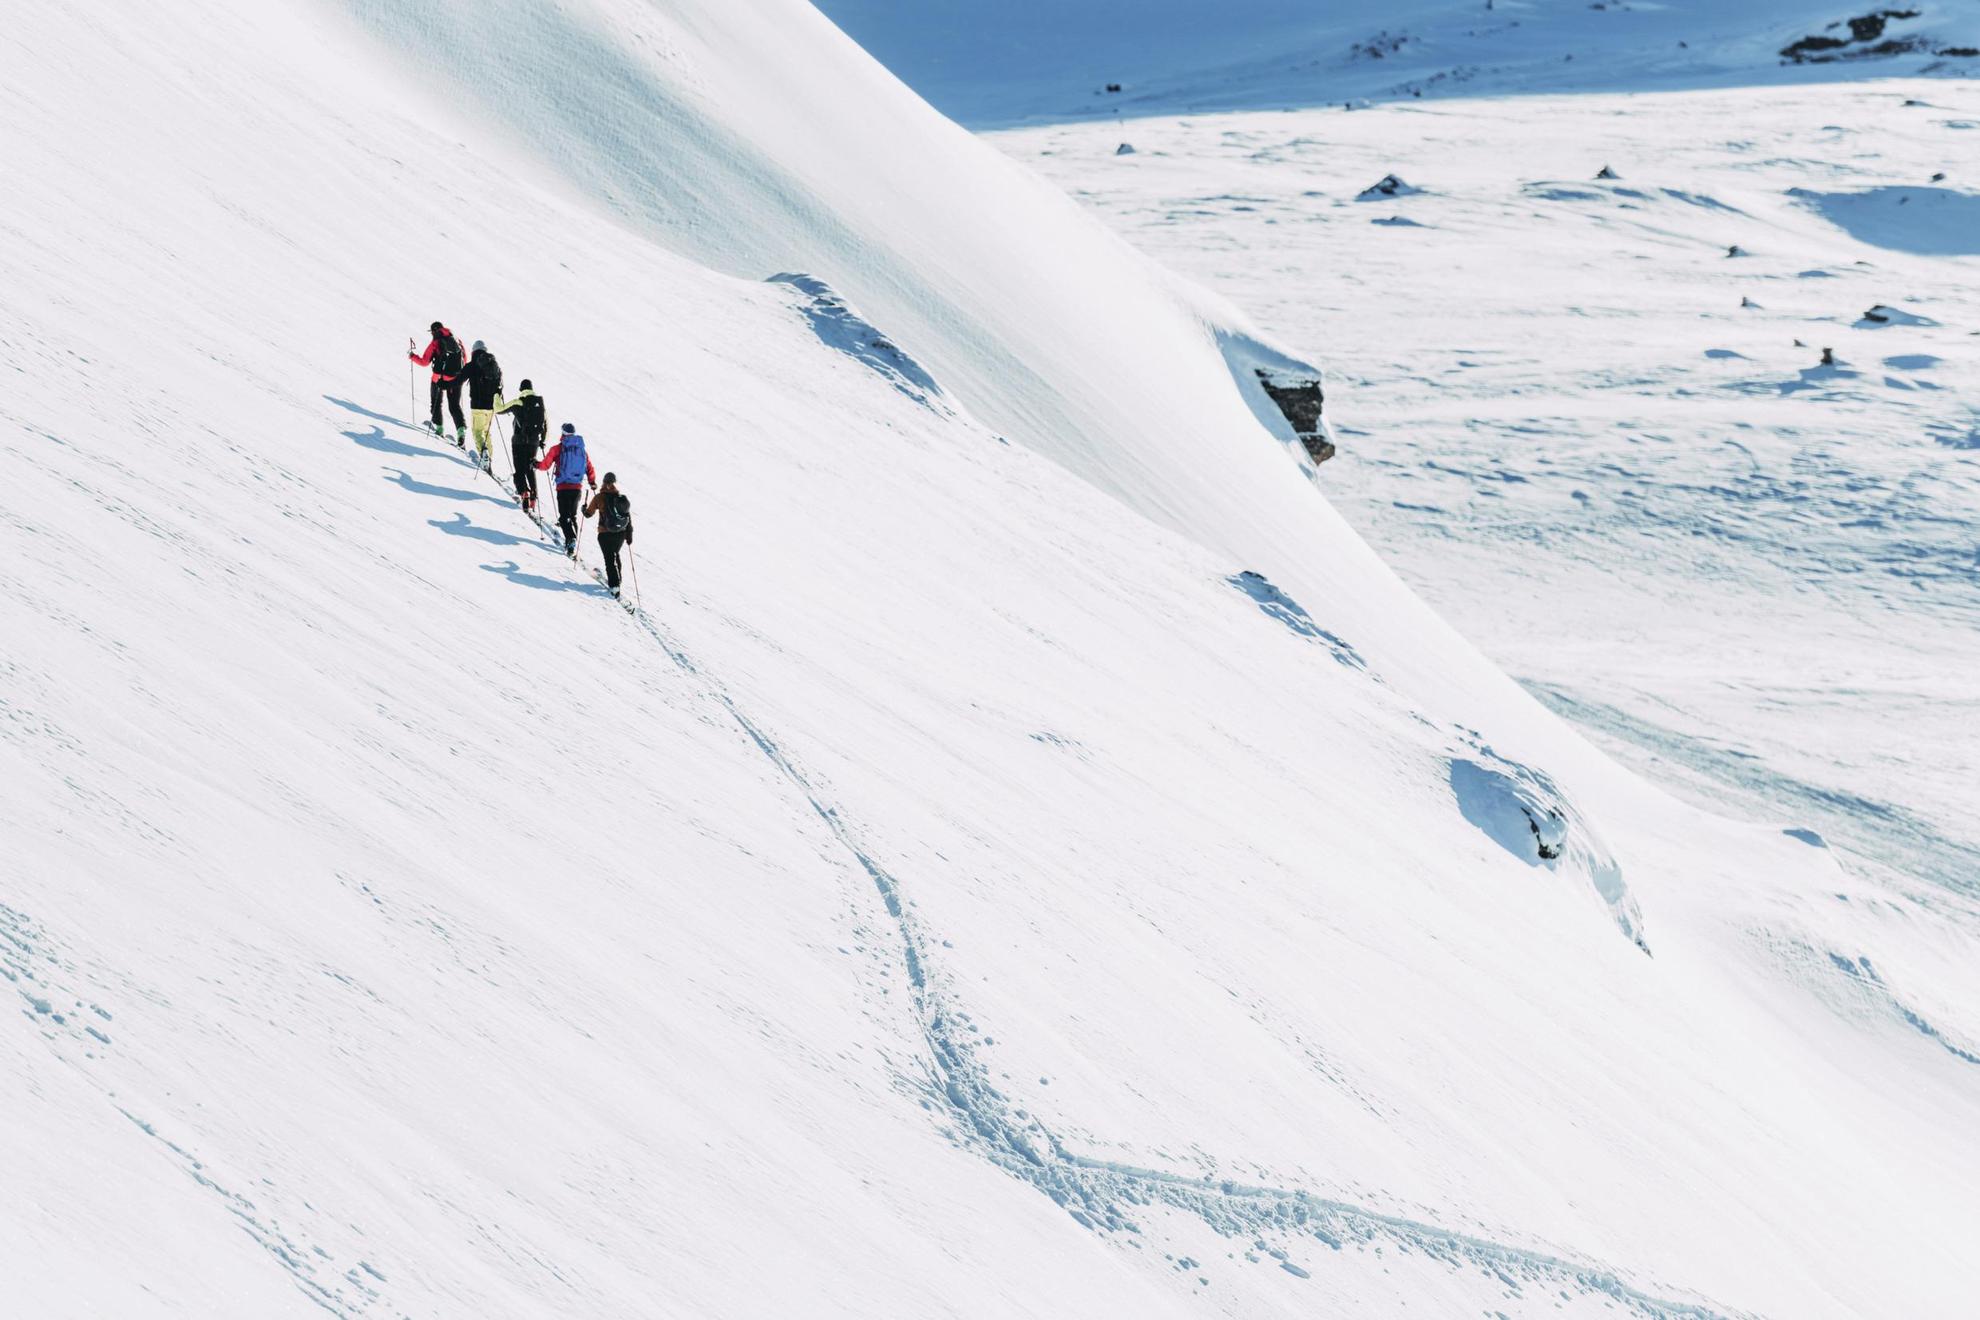 Vijf mensen met ski's zijn op weg naar een besneeuwde berg.